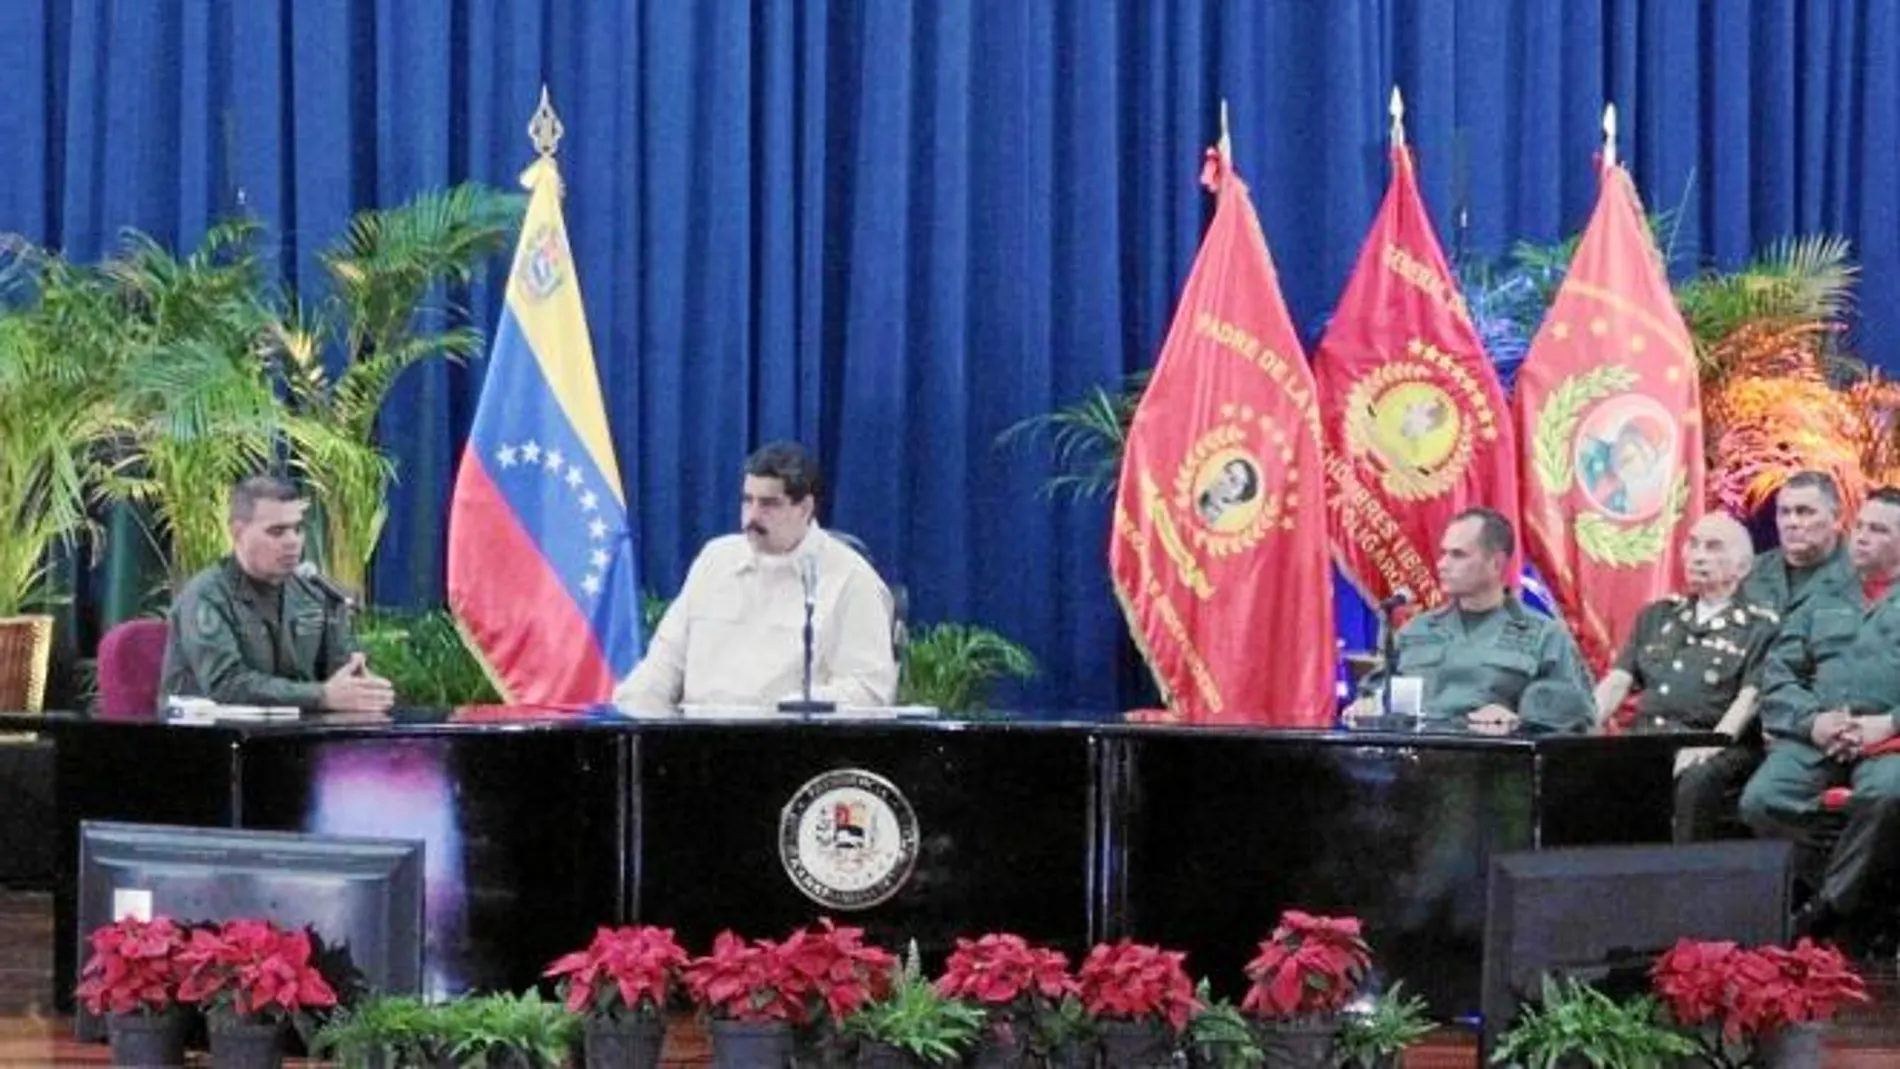 El presidente Nicolás Maduro junto al ministro de Defensa, Vladimir Padrino, durante una reunión con los jefes de las Fuerzas Armadas en Caracas